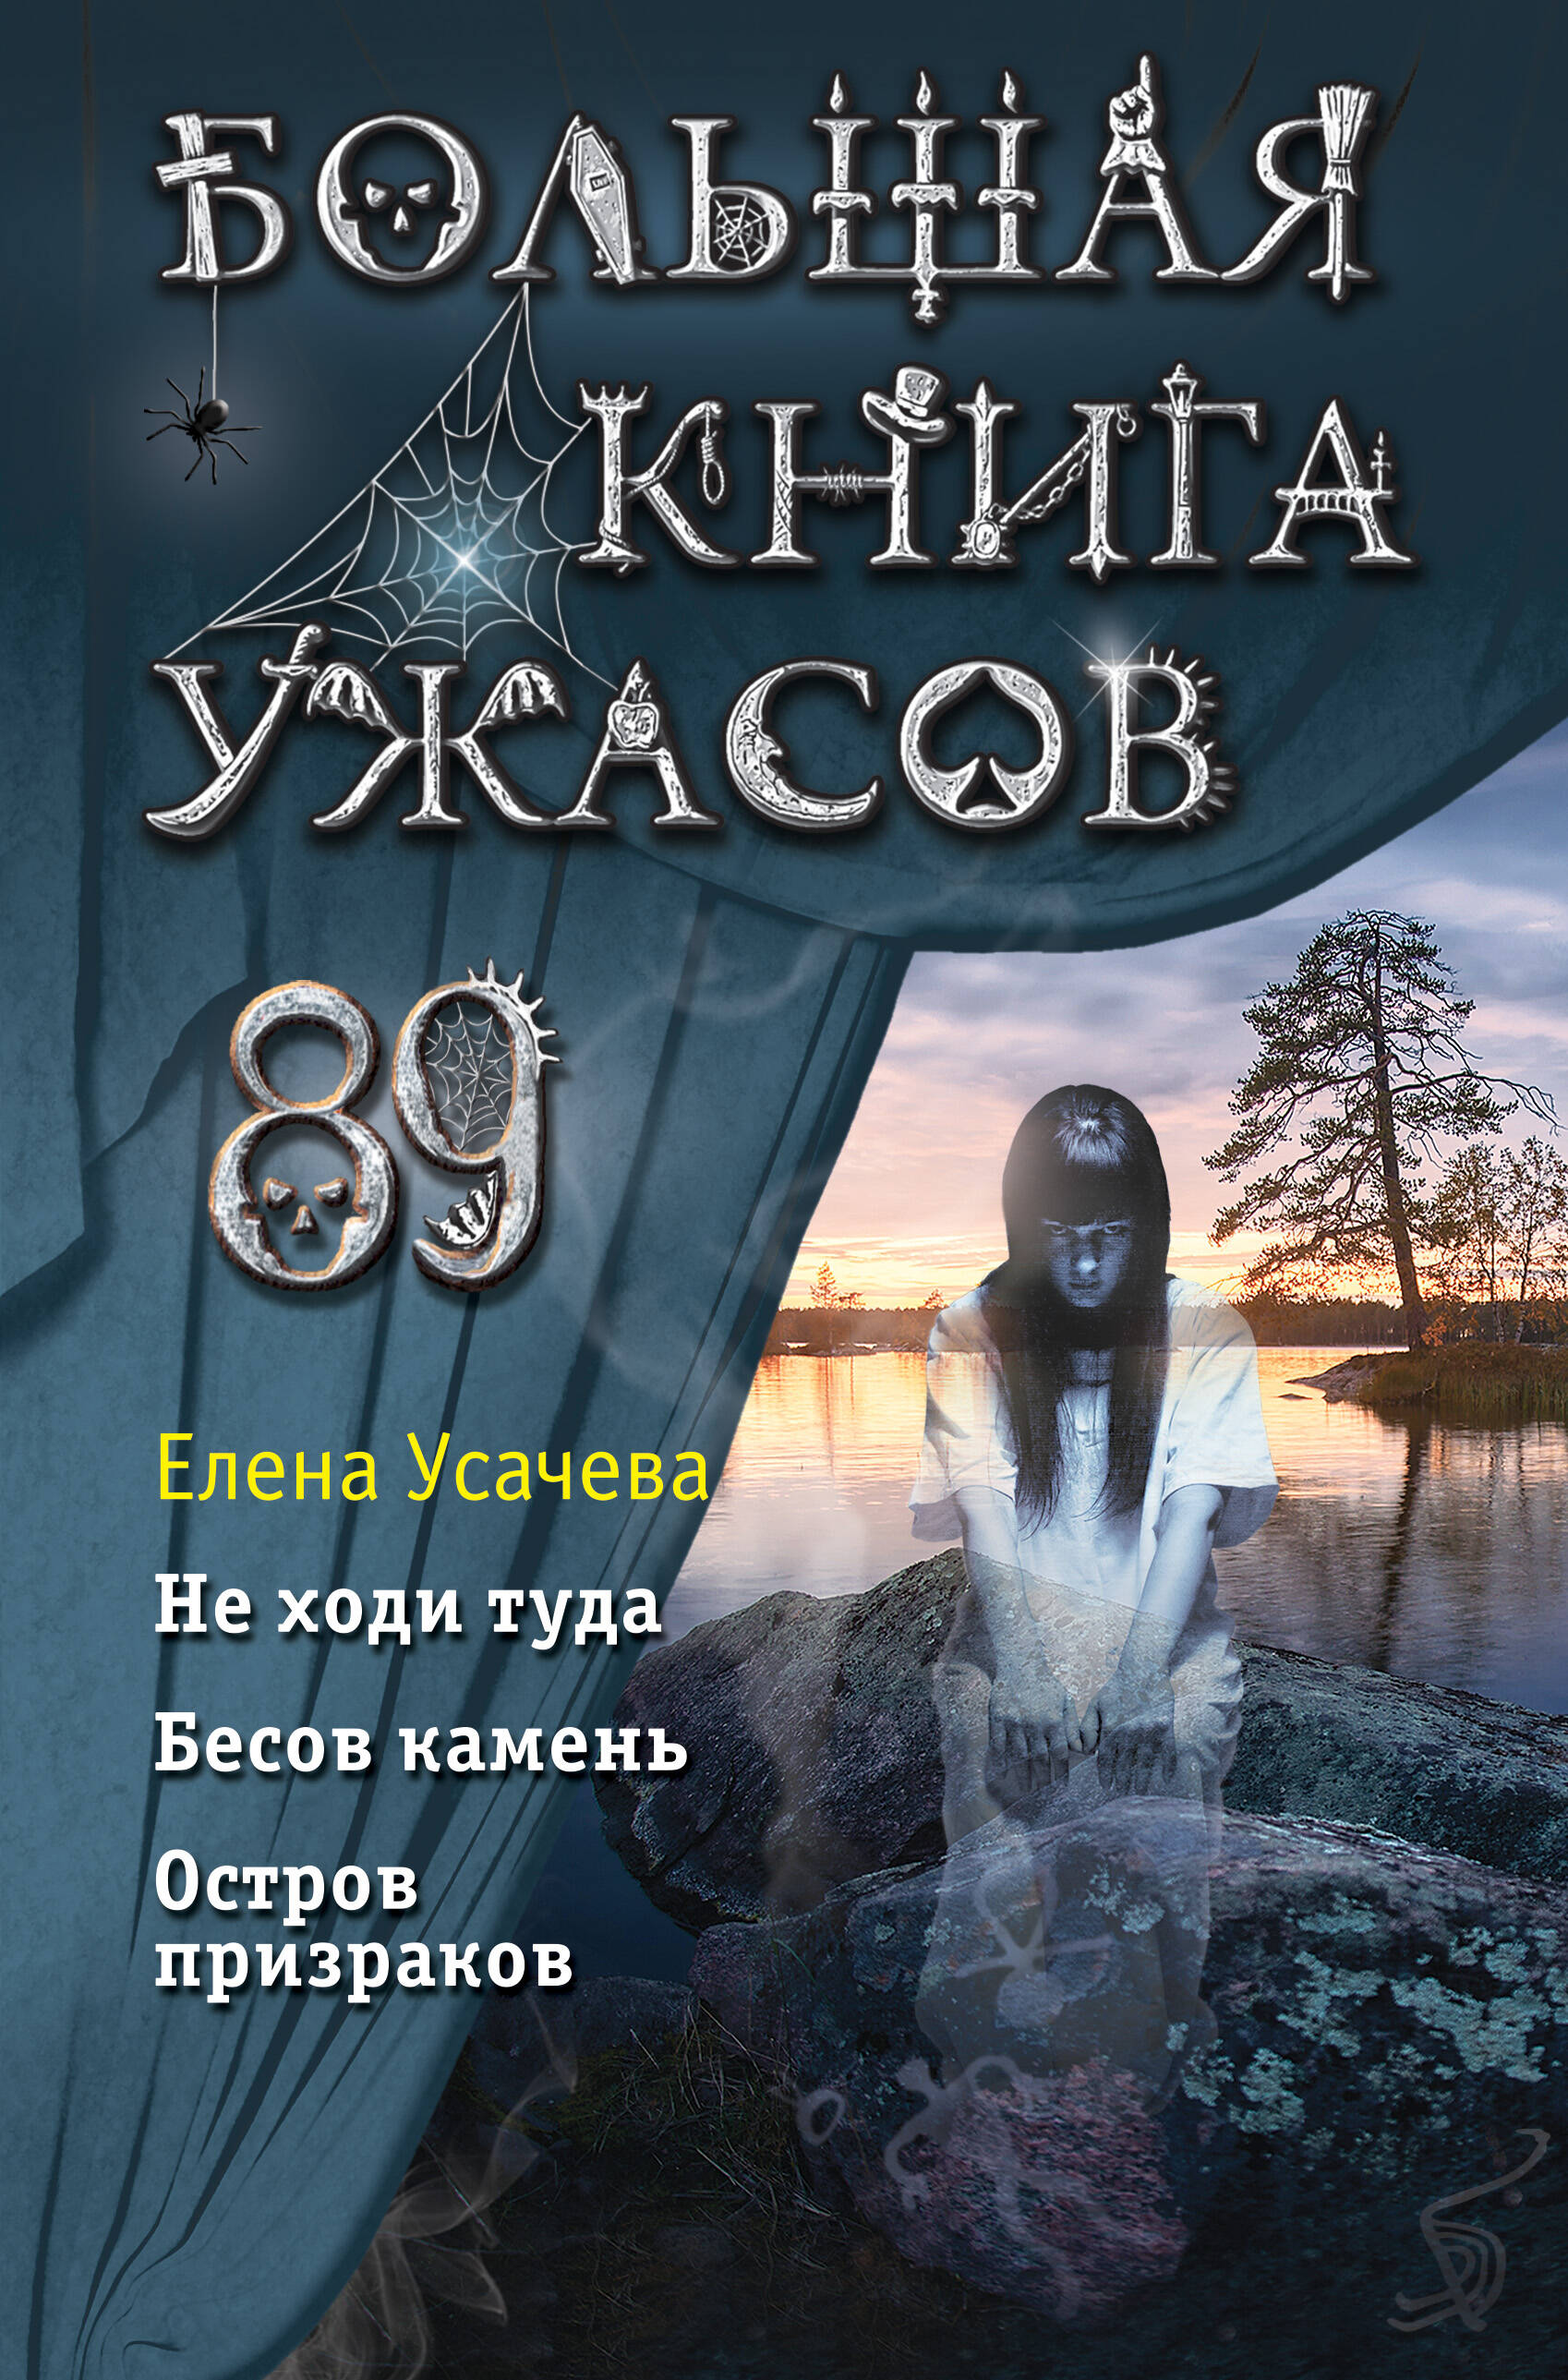 Усачева Елена Александровна Большая книга ужасов 89